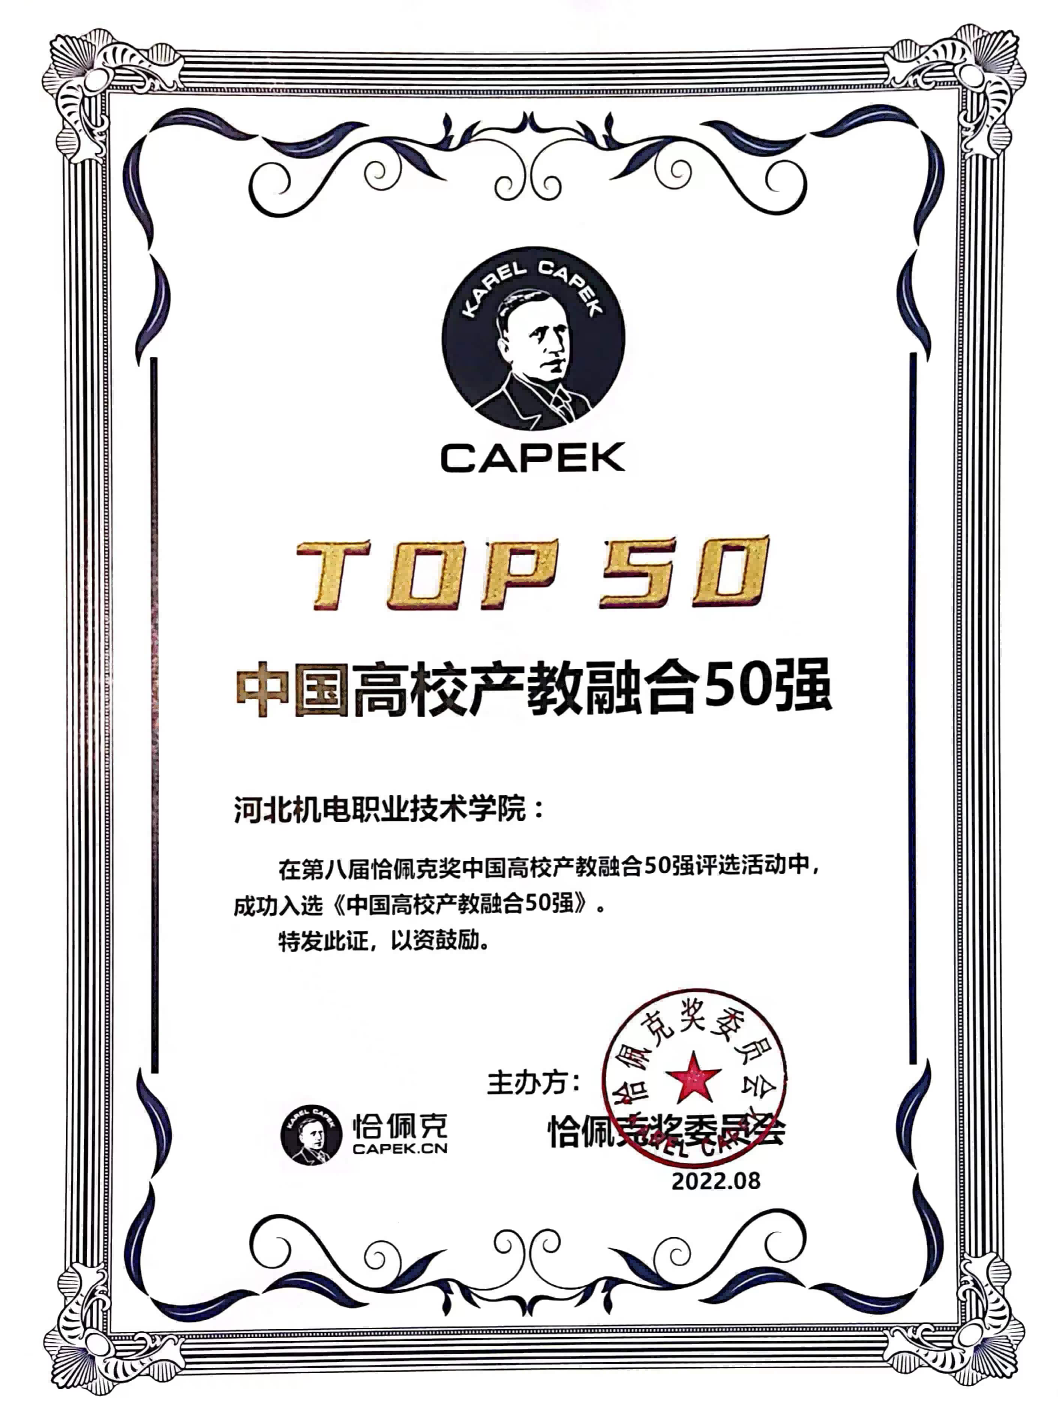 永利集团荣获第八届恰佩克奖“中国高校产教融合50强”